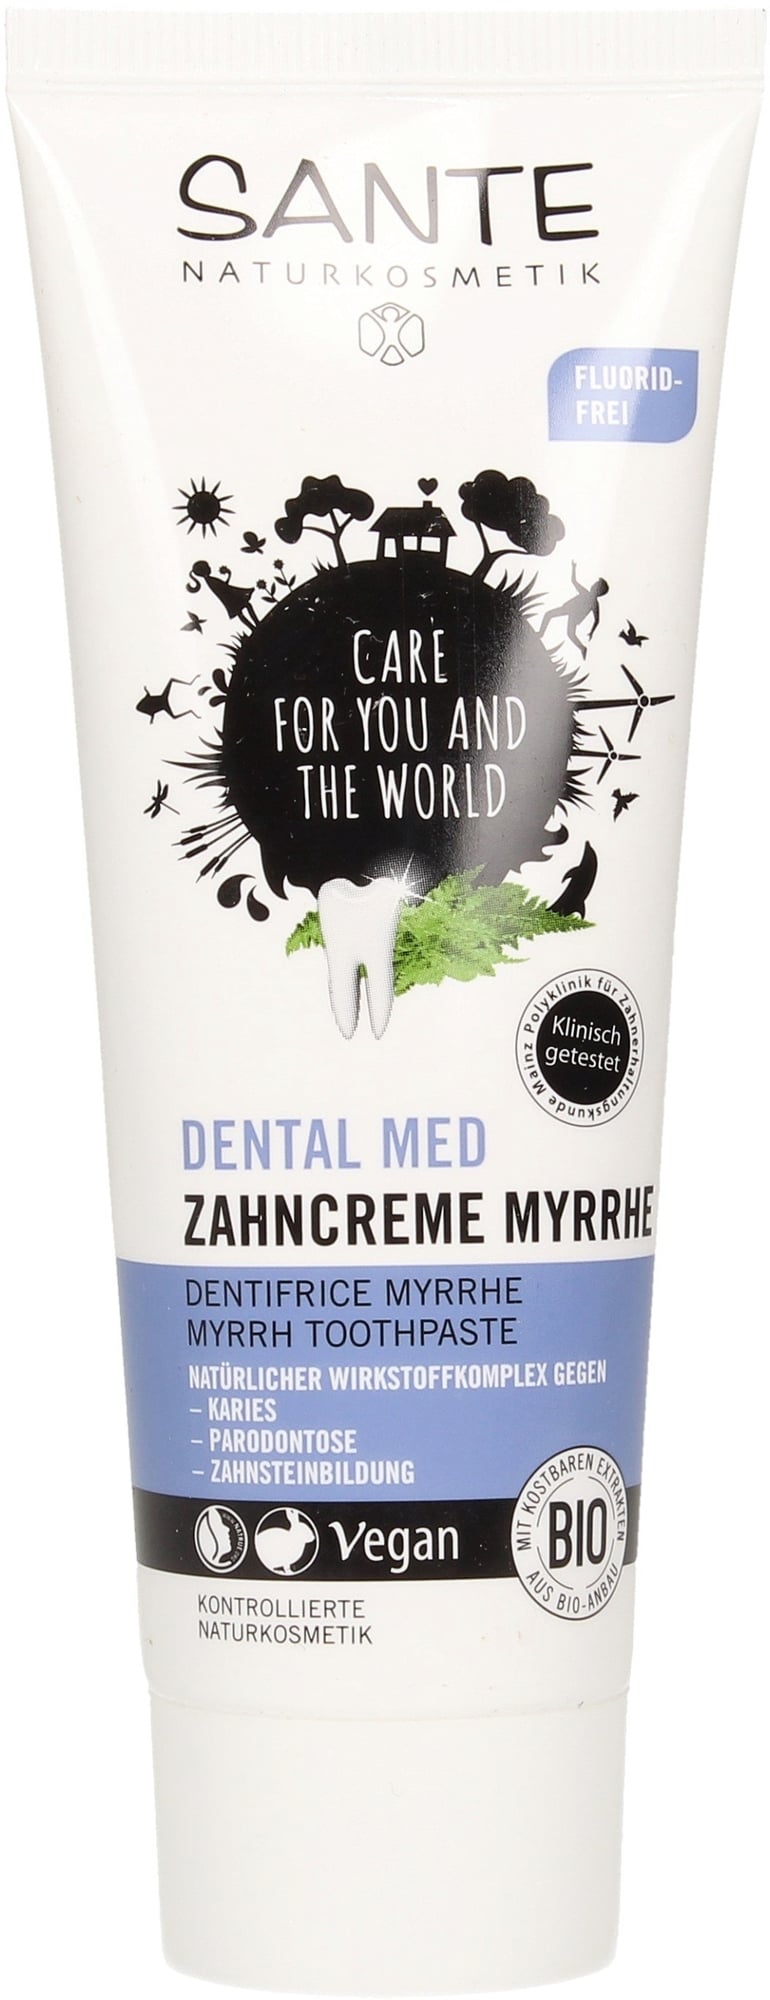 Sante Dental Med Myrrh Toothpaste